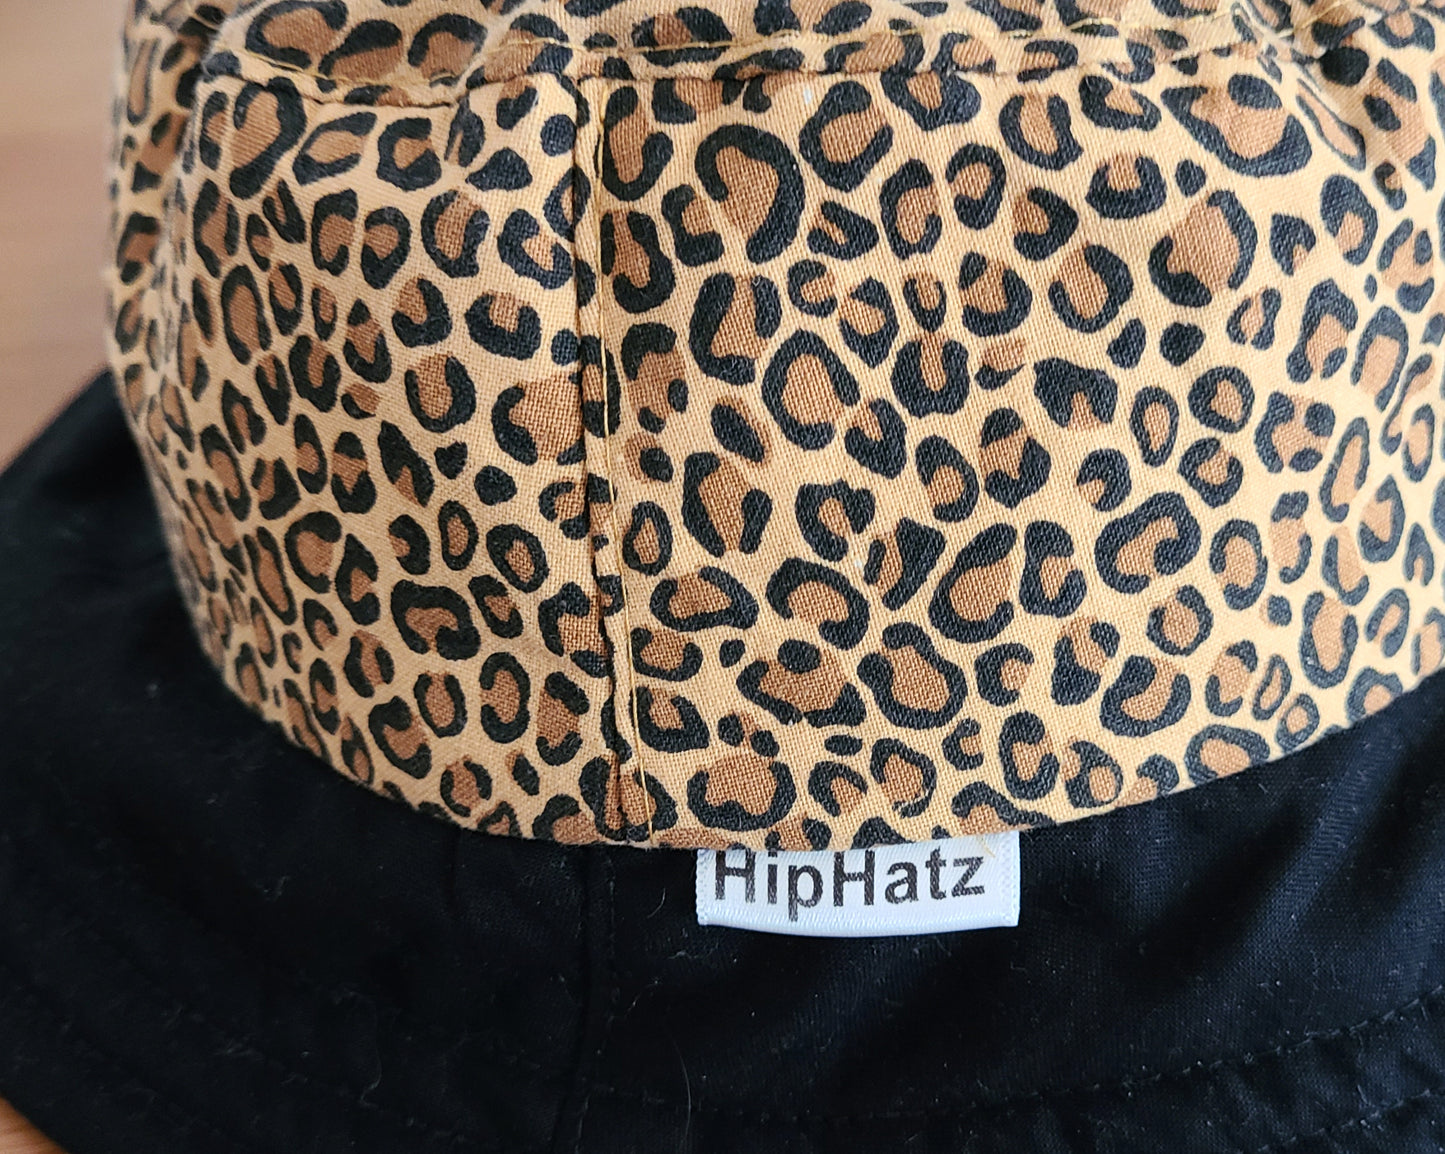 Hip Hatz - Leopard Skin